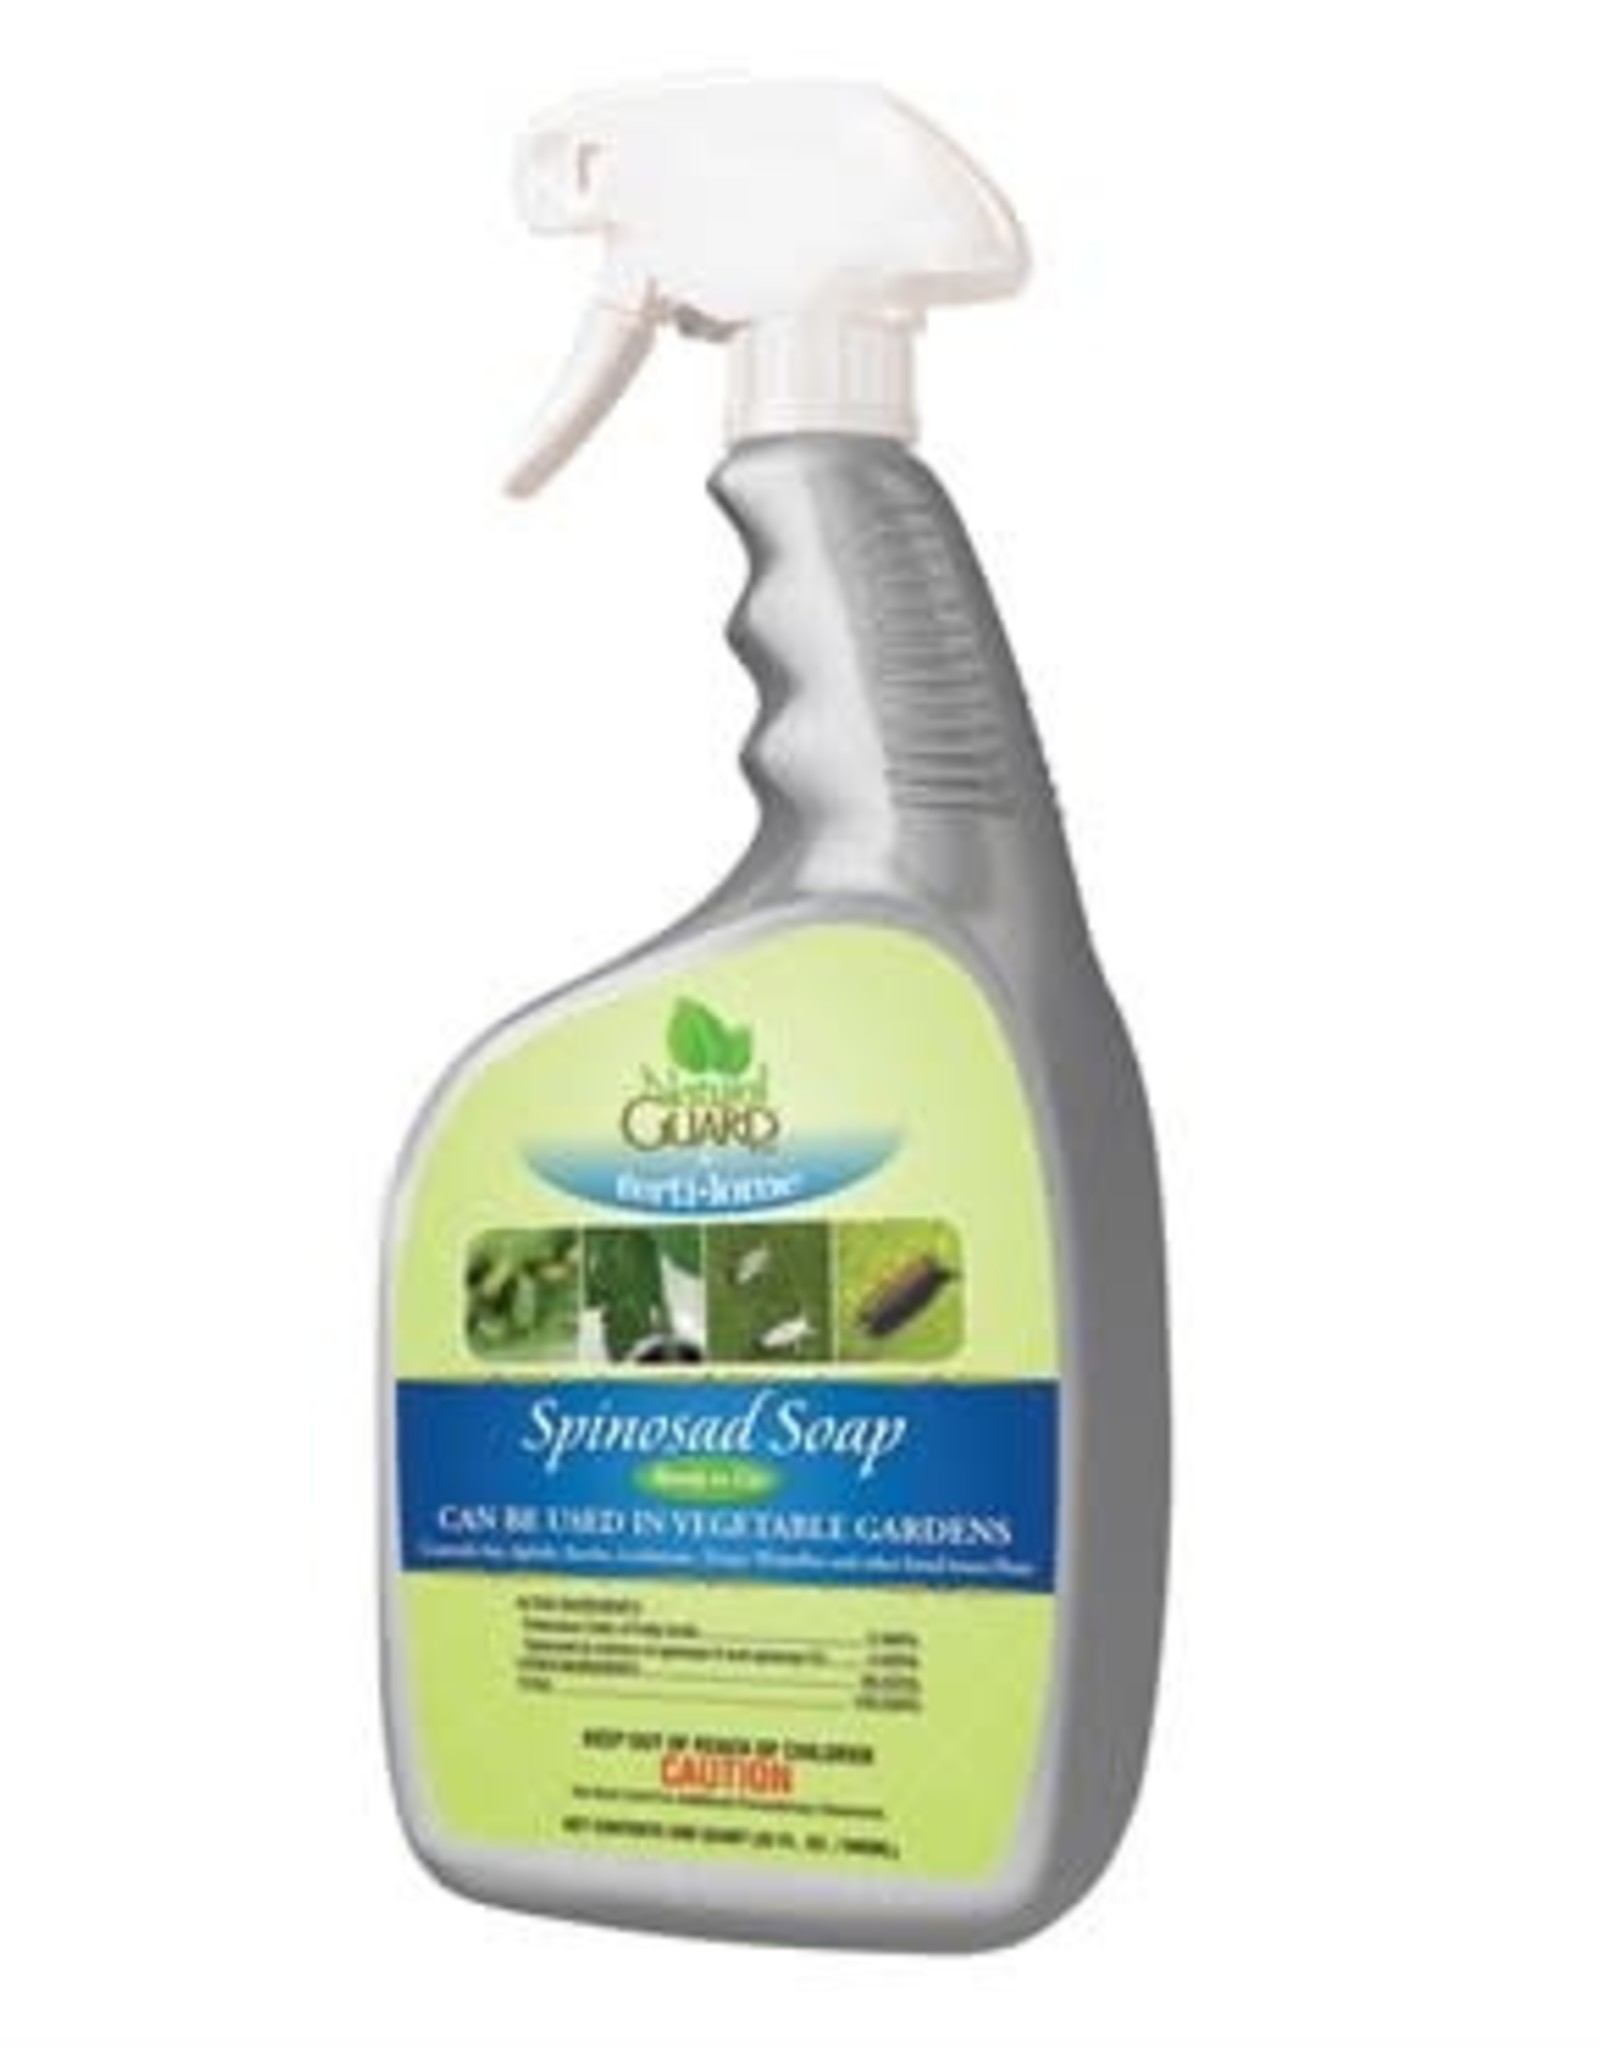 VPG ferti-lome Natural Guard  Spinosad Soap